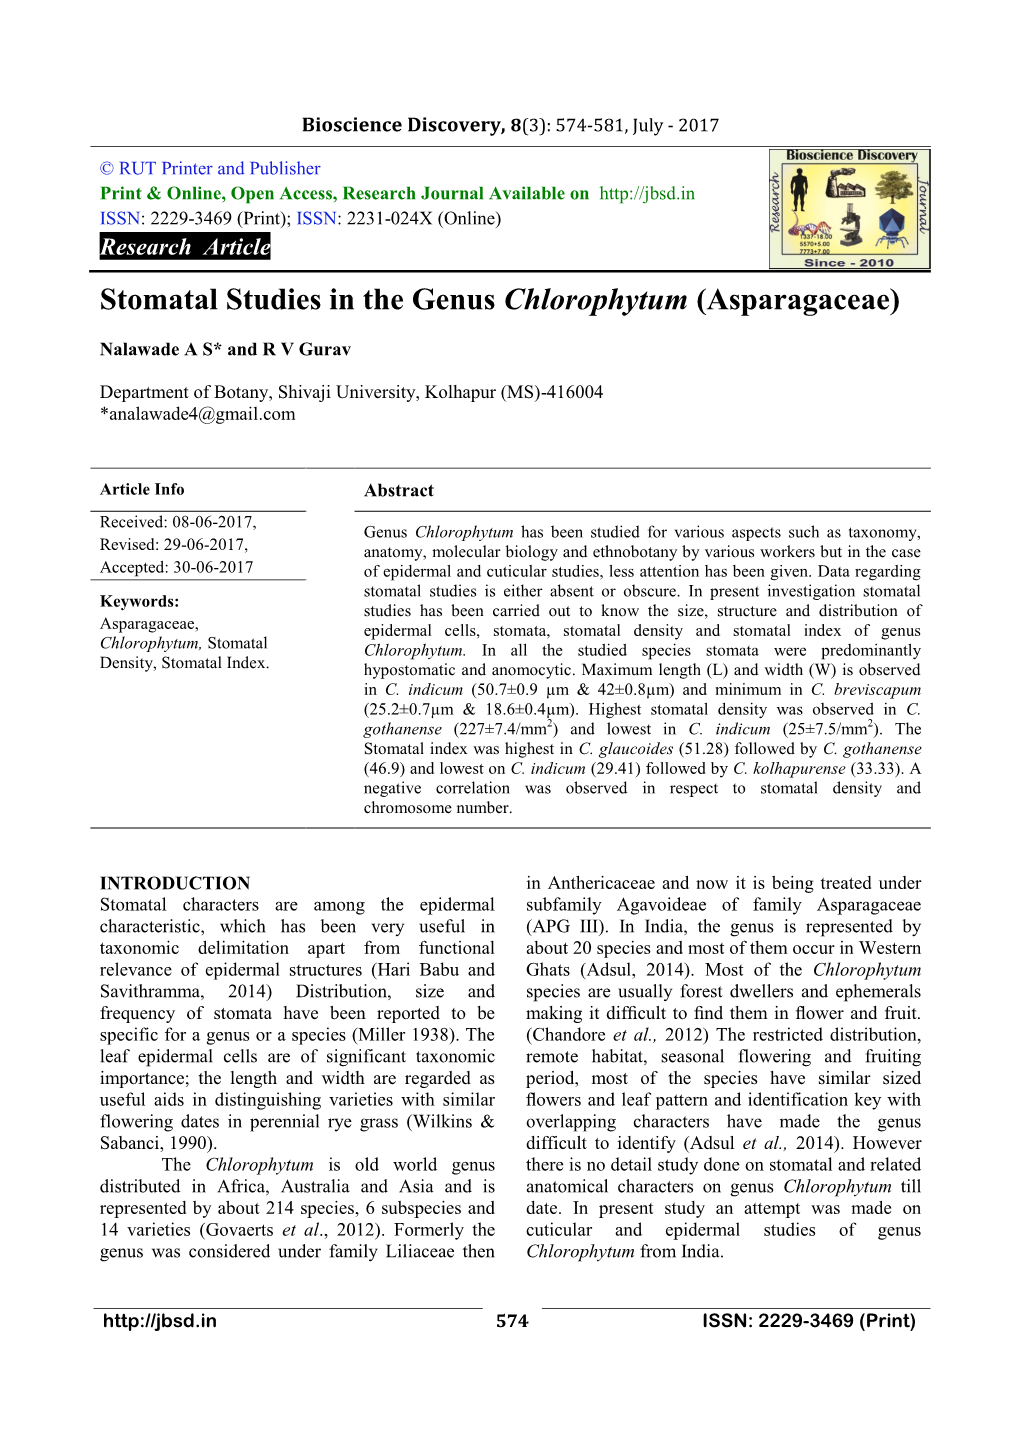 Stomatal Studies in the Genus Chlorophytum (Asparagaceae)